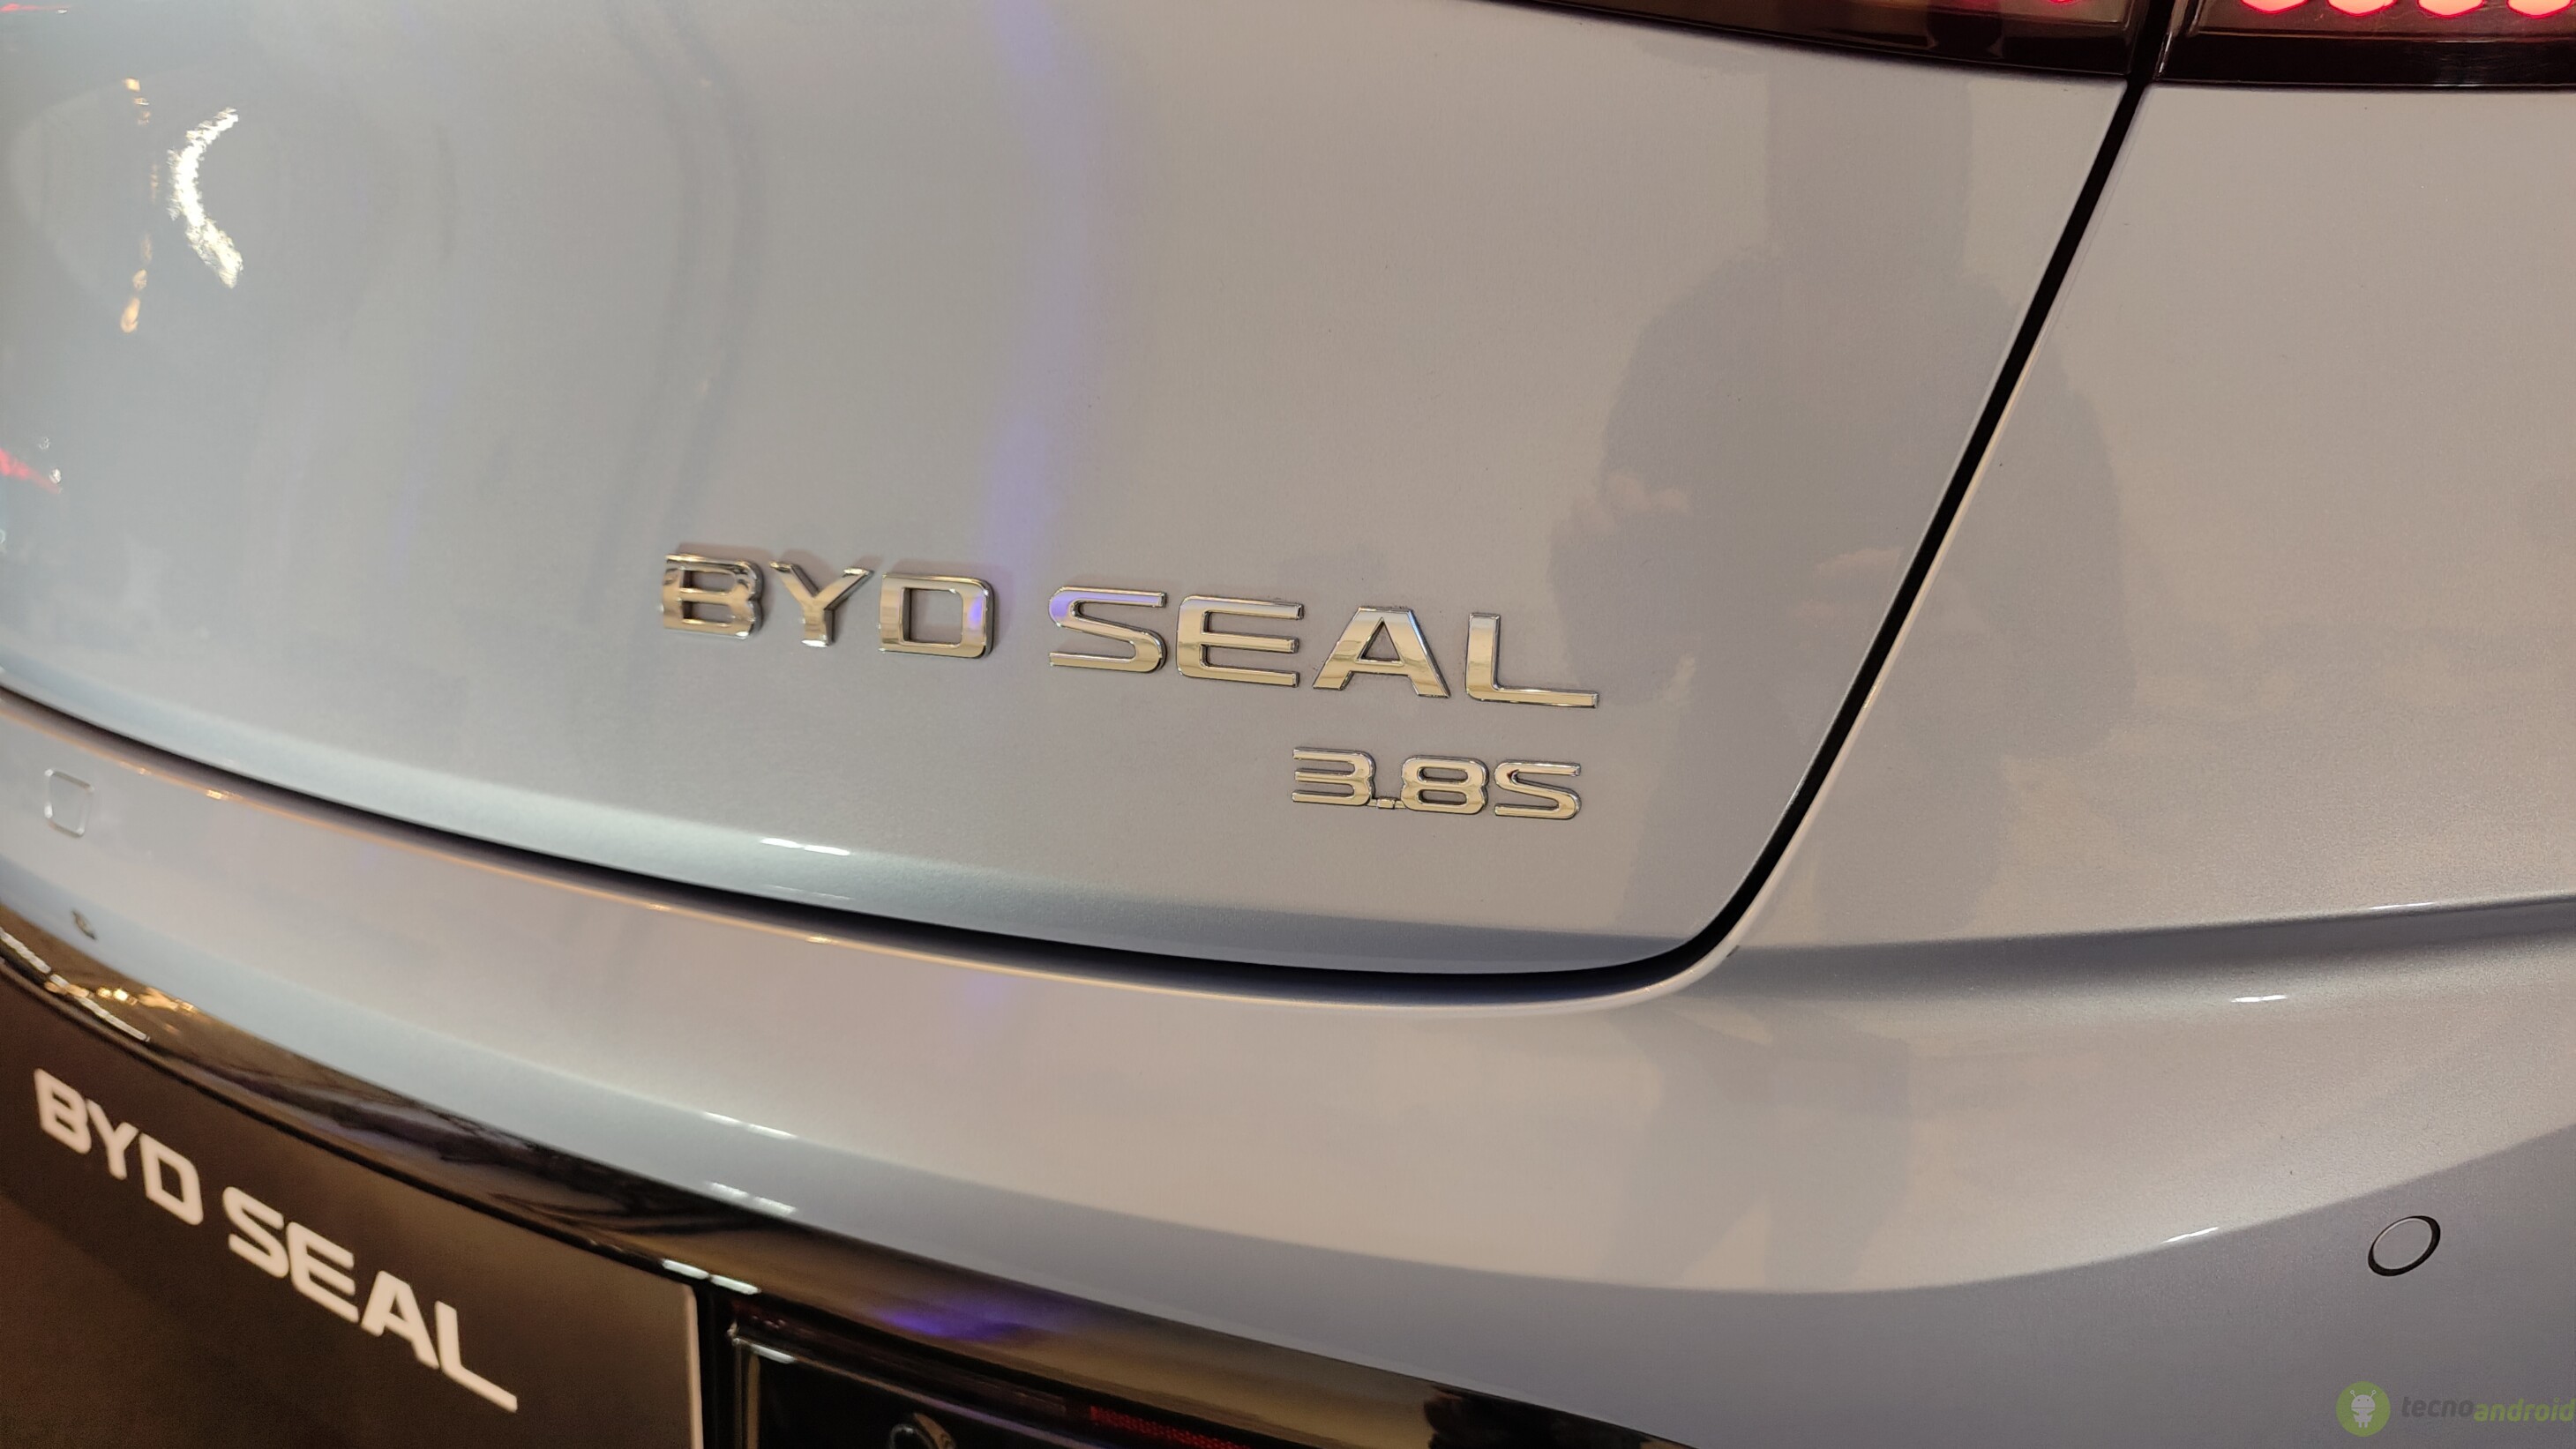 BYD Seal arriva in Italia: nuovi standard per l'elettrico del segmento D